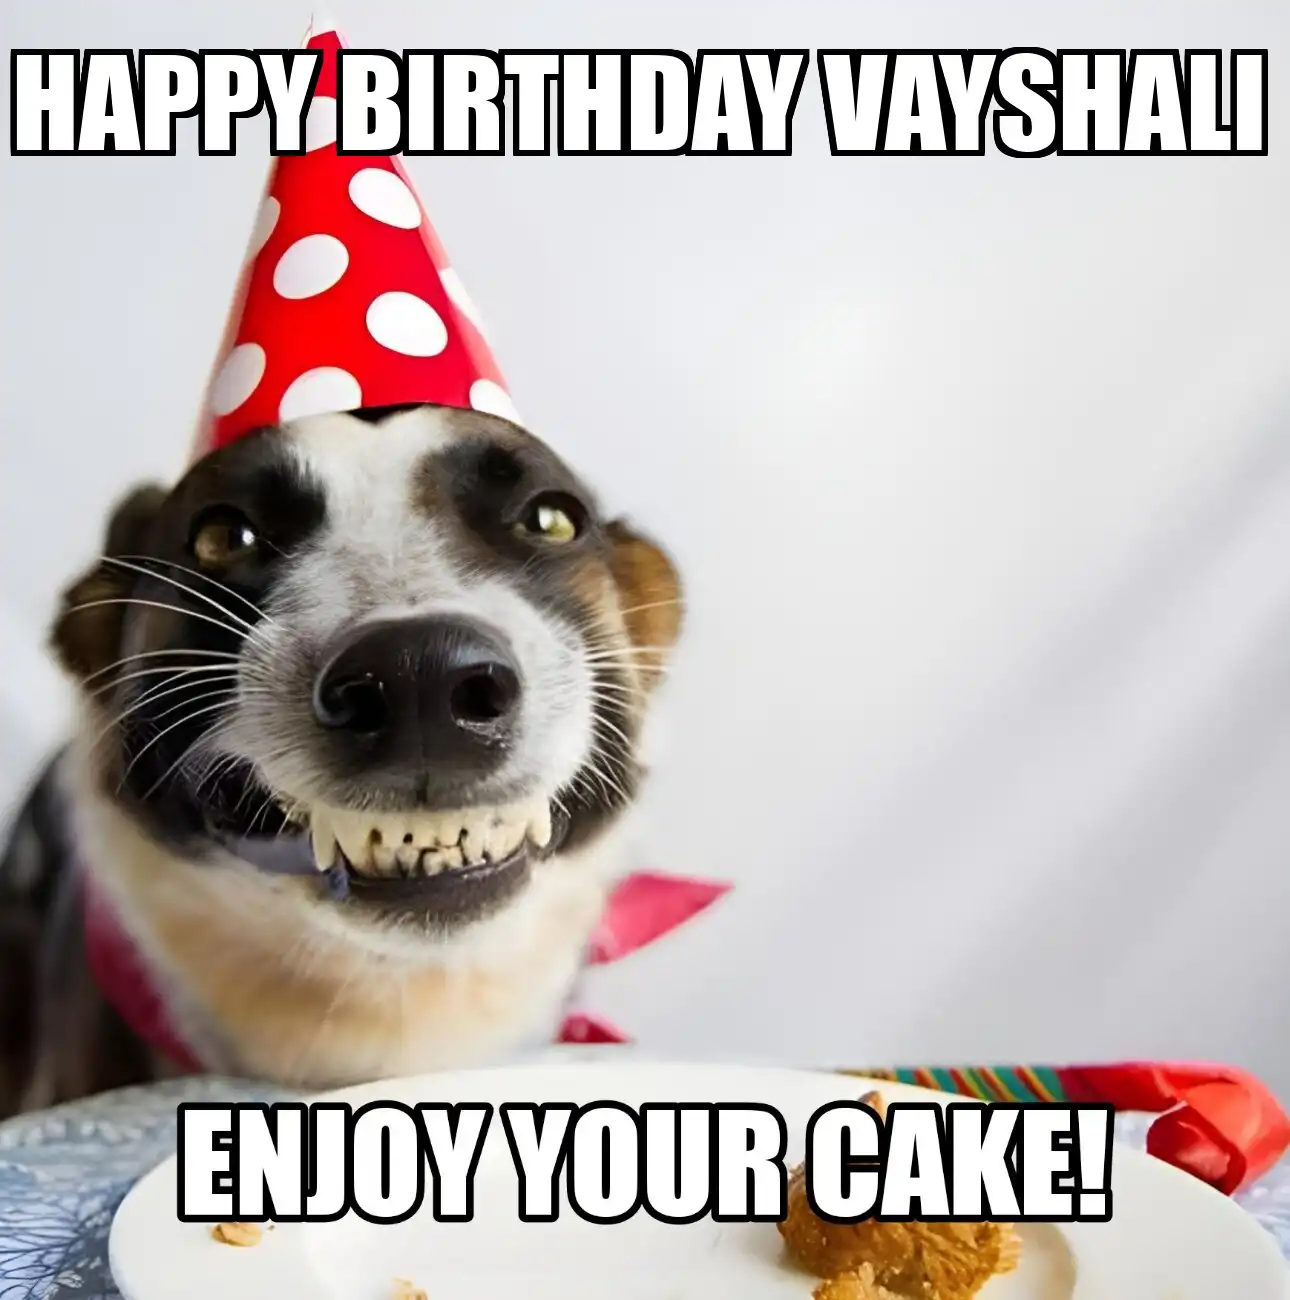 Happy Birthday Vayshali Enjoy Your Cake Dog Meme